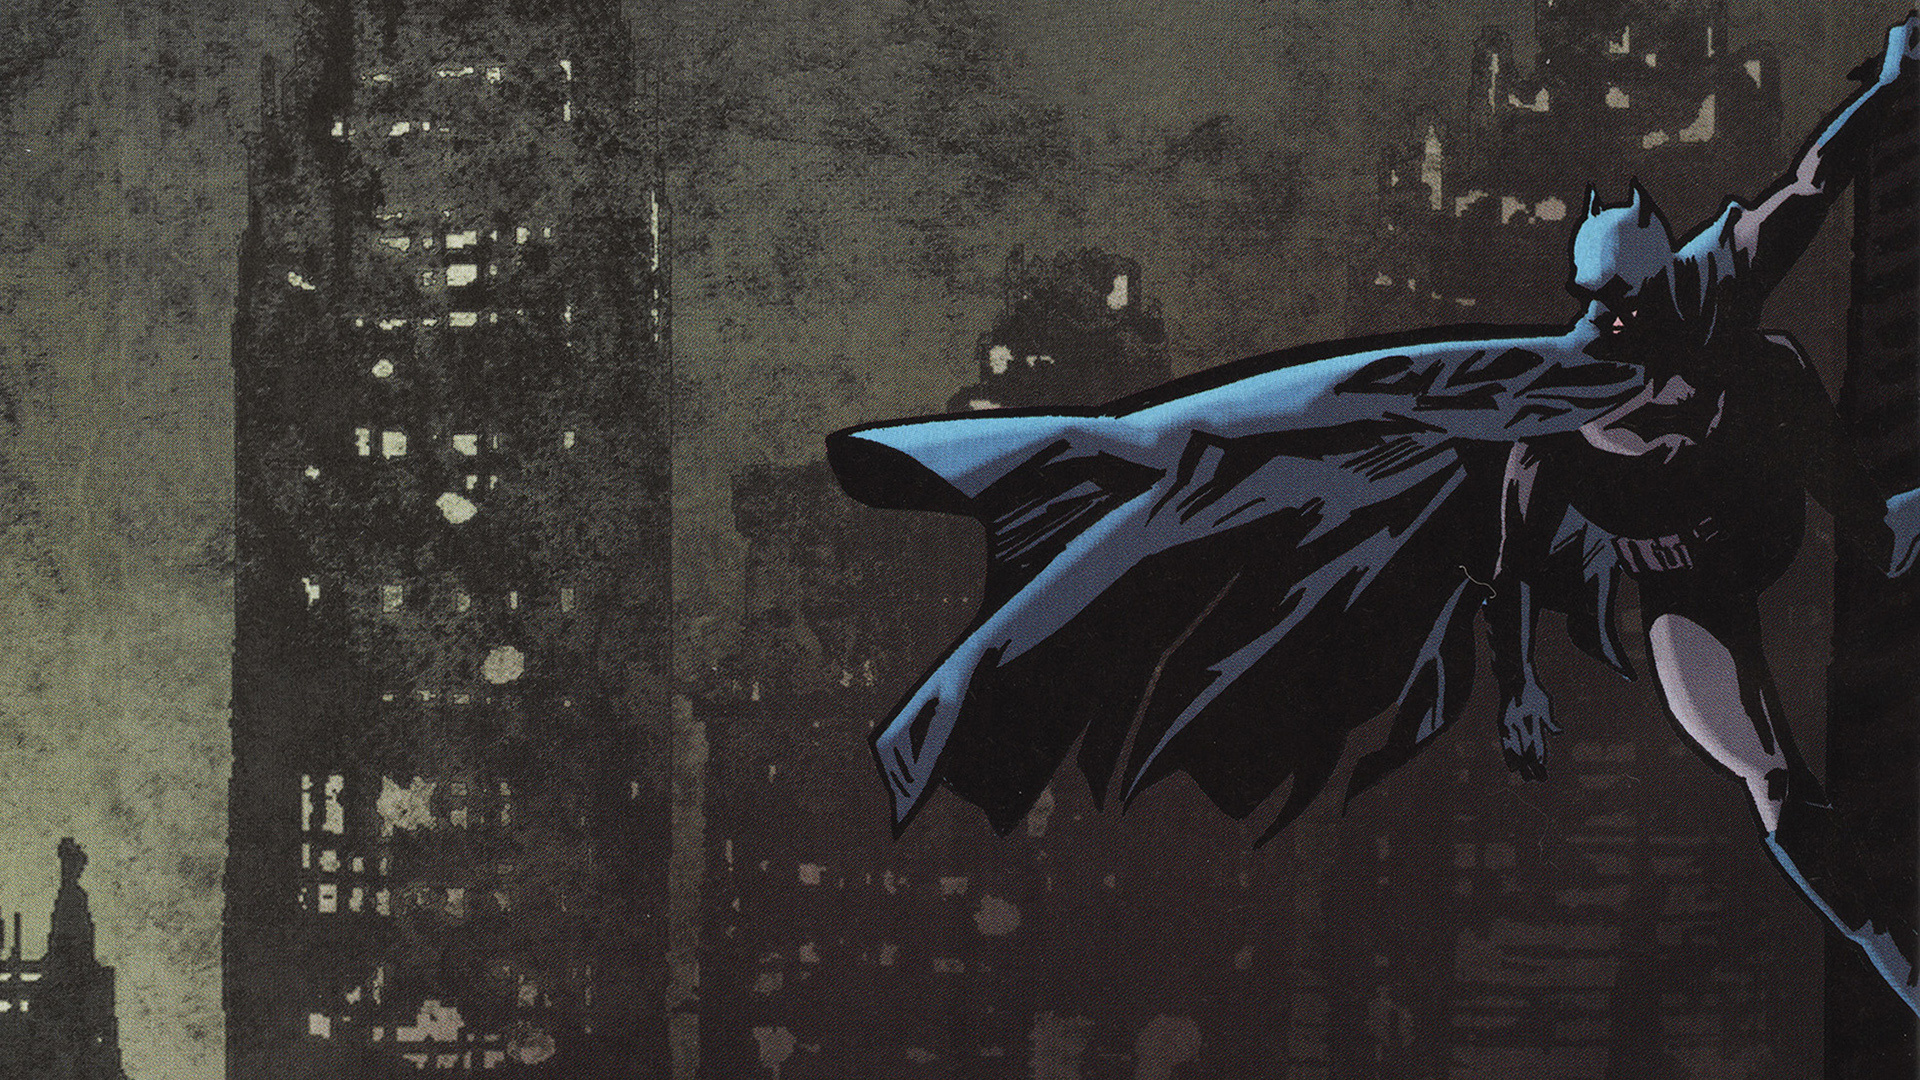 Batman comics HD wallpapers